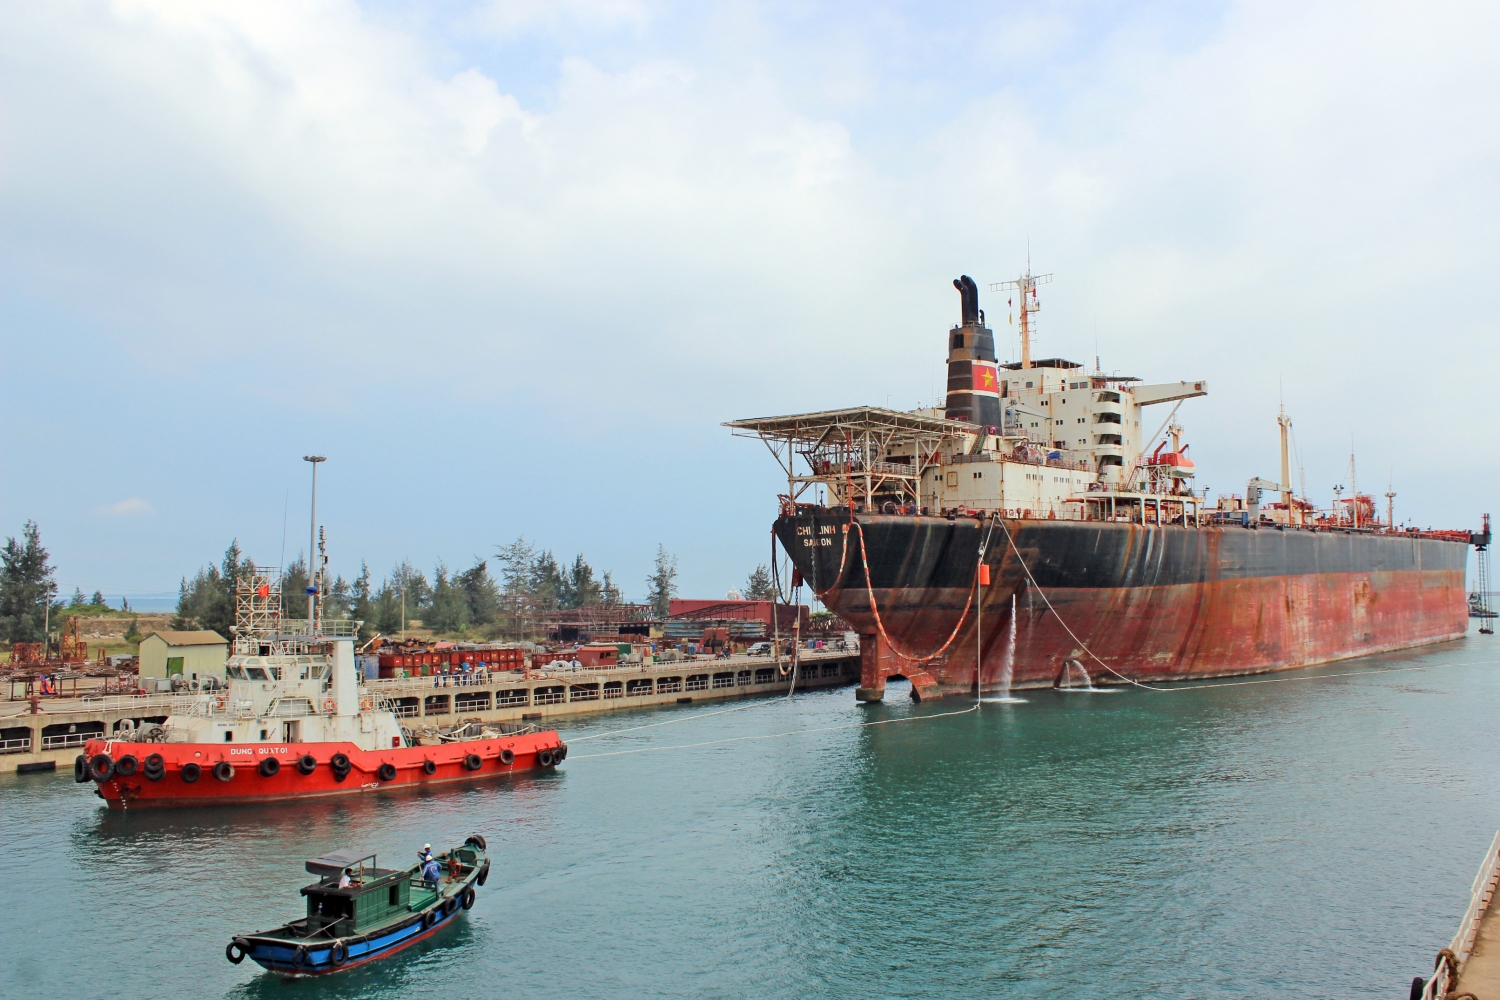 Vietnam's shipbuilding industry is now